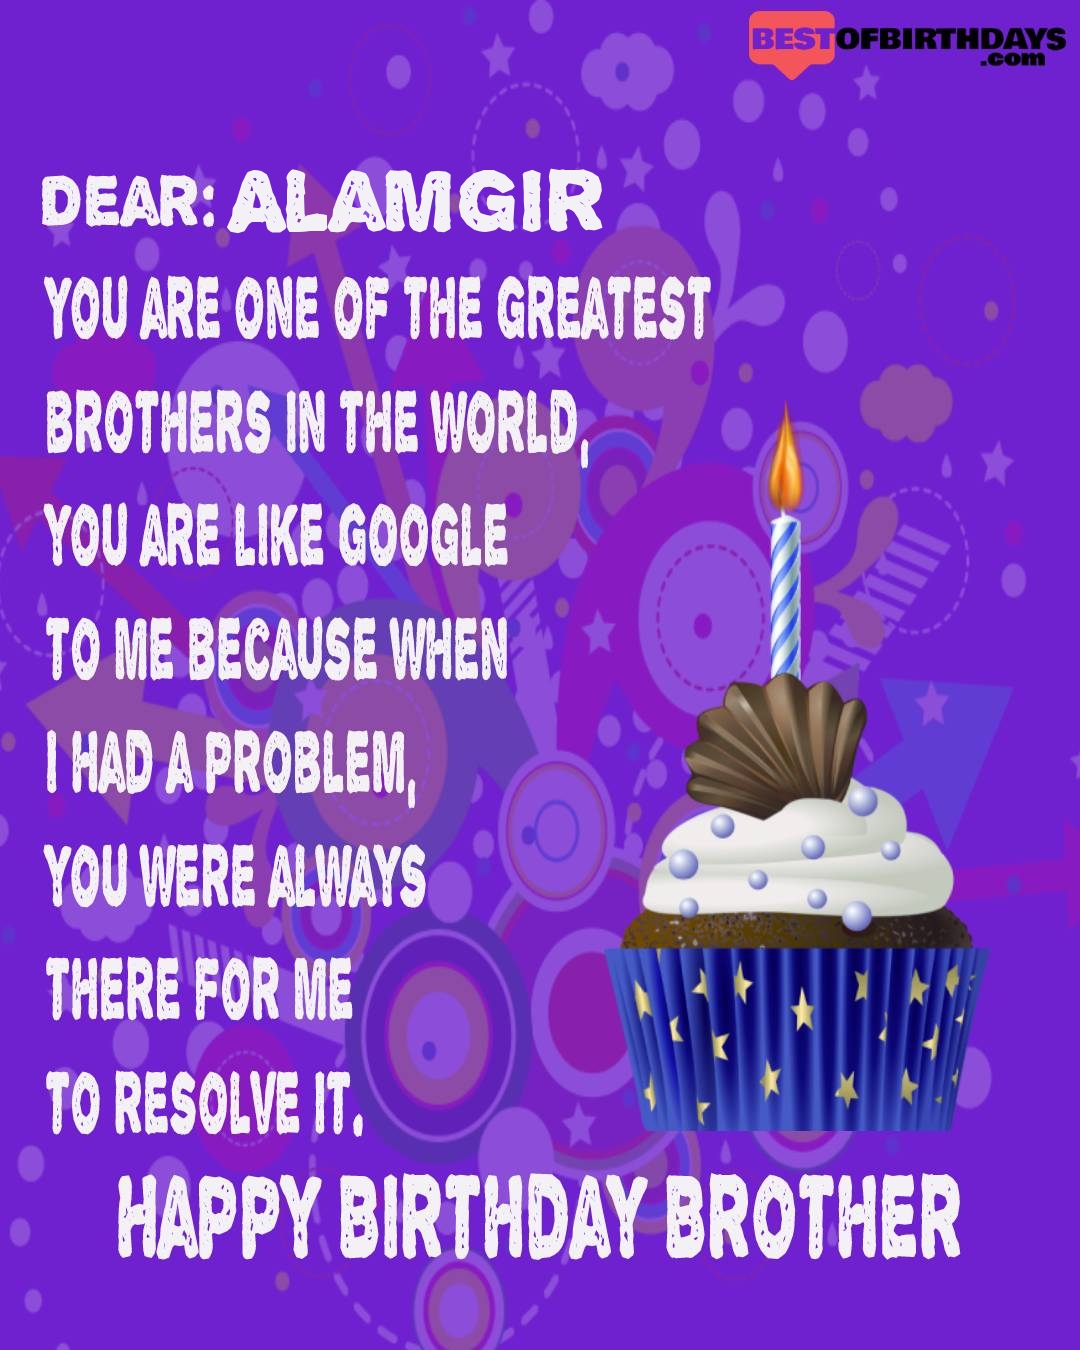 Happy birthday alamgir bhai brother bro